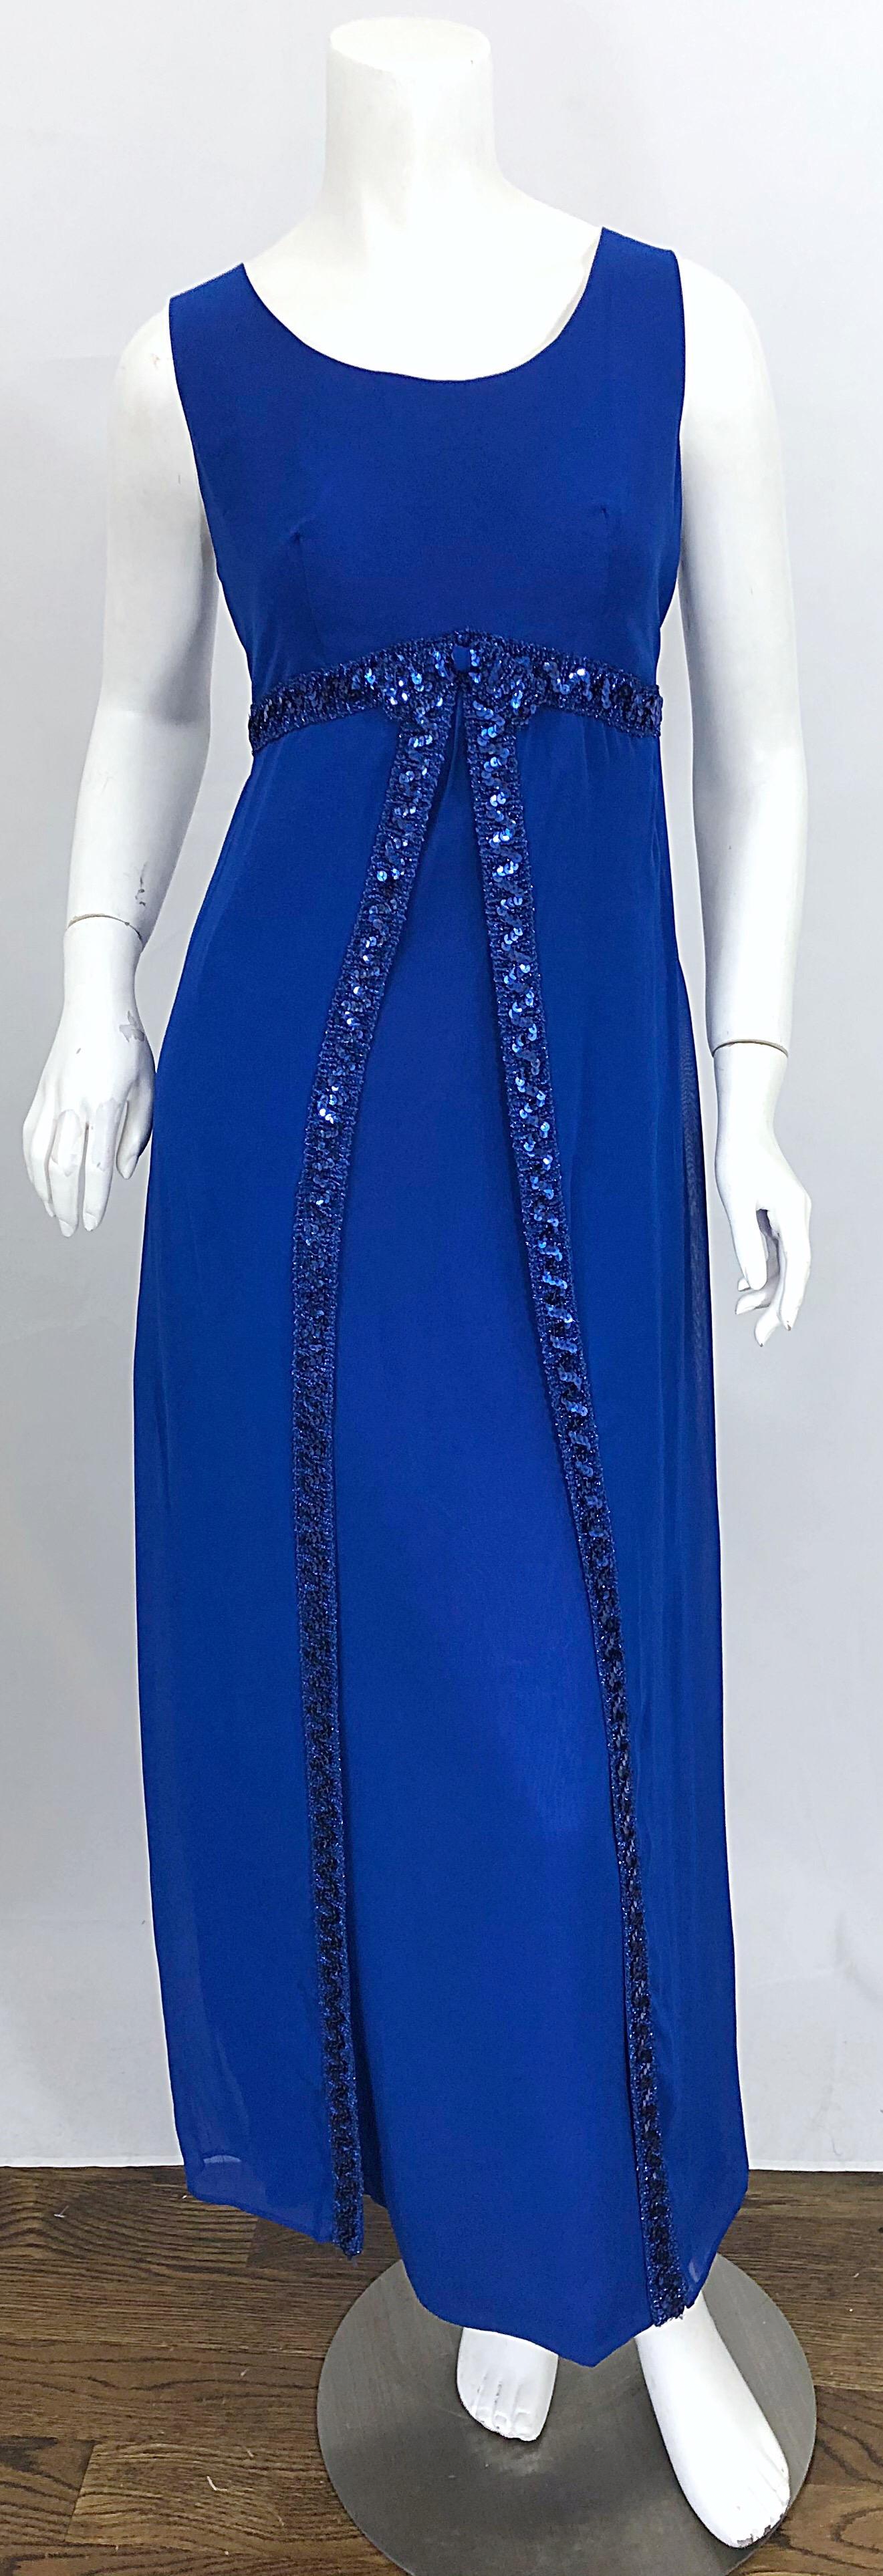 Magnifique robe CHARMONT MODEL des années 1960 par BURKEMAN & PASSES en mousseline de soie bleu royal pailletée ! Comprend un corsage ajusté, une jupe droite et une superposition. Des centaines de paillettes cousues à la main sous la poitrine et le